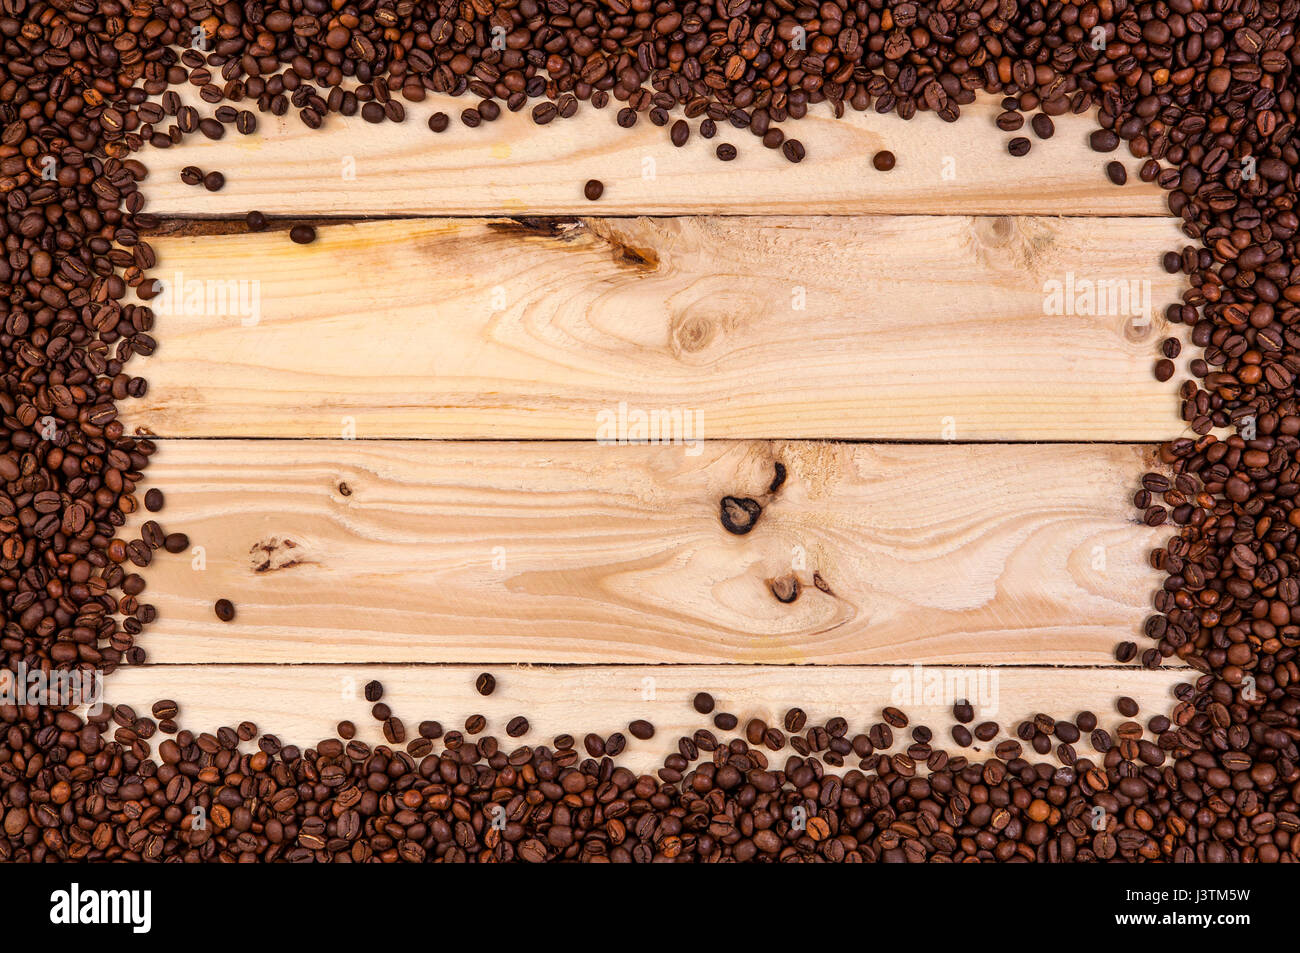 Frame de grains de café sur fond de bois clair. Top View with copy space Banque D'Images